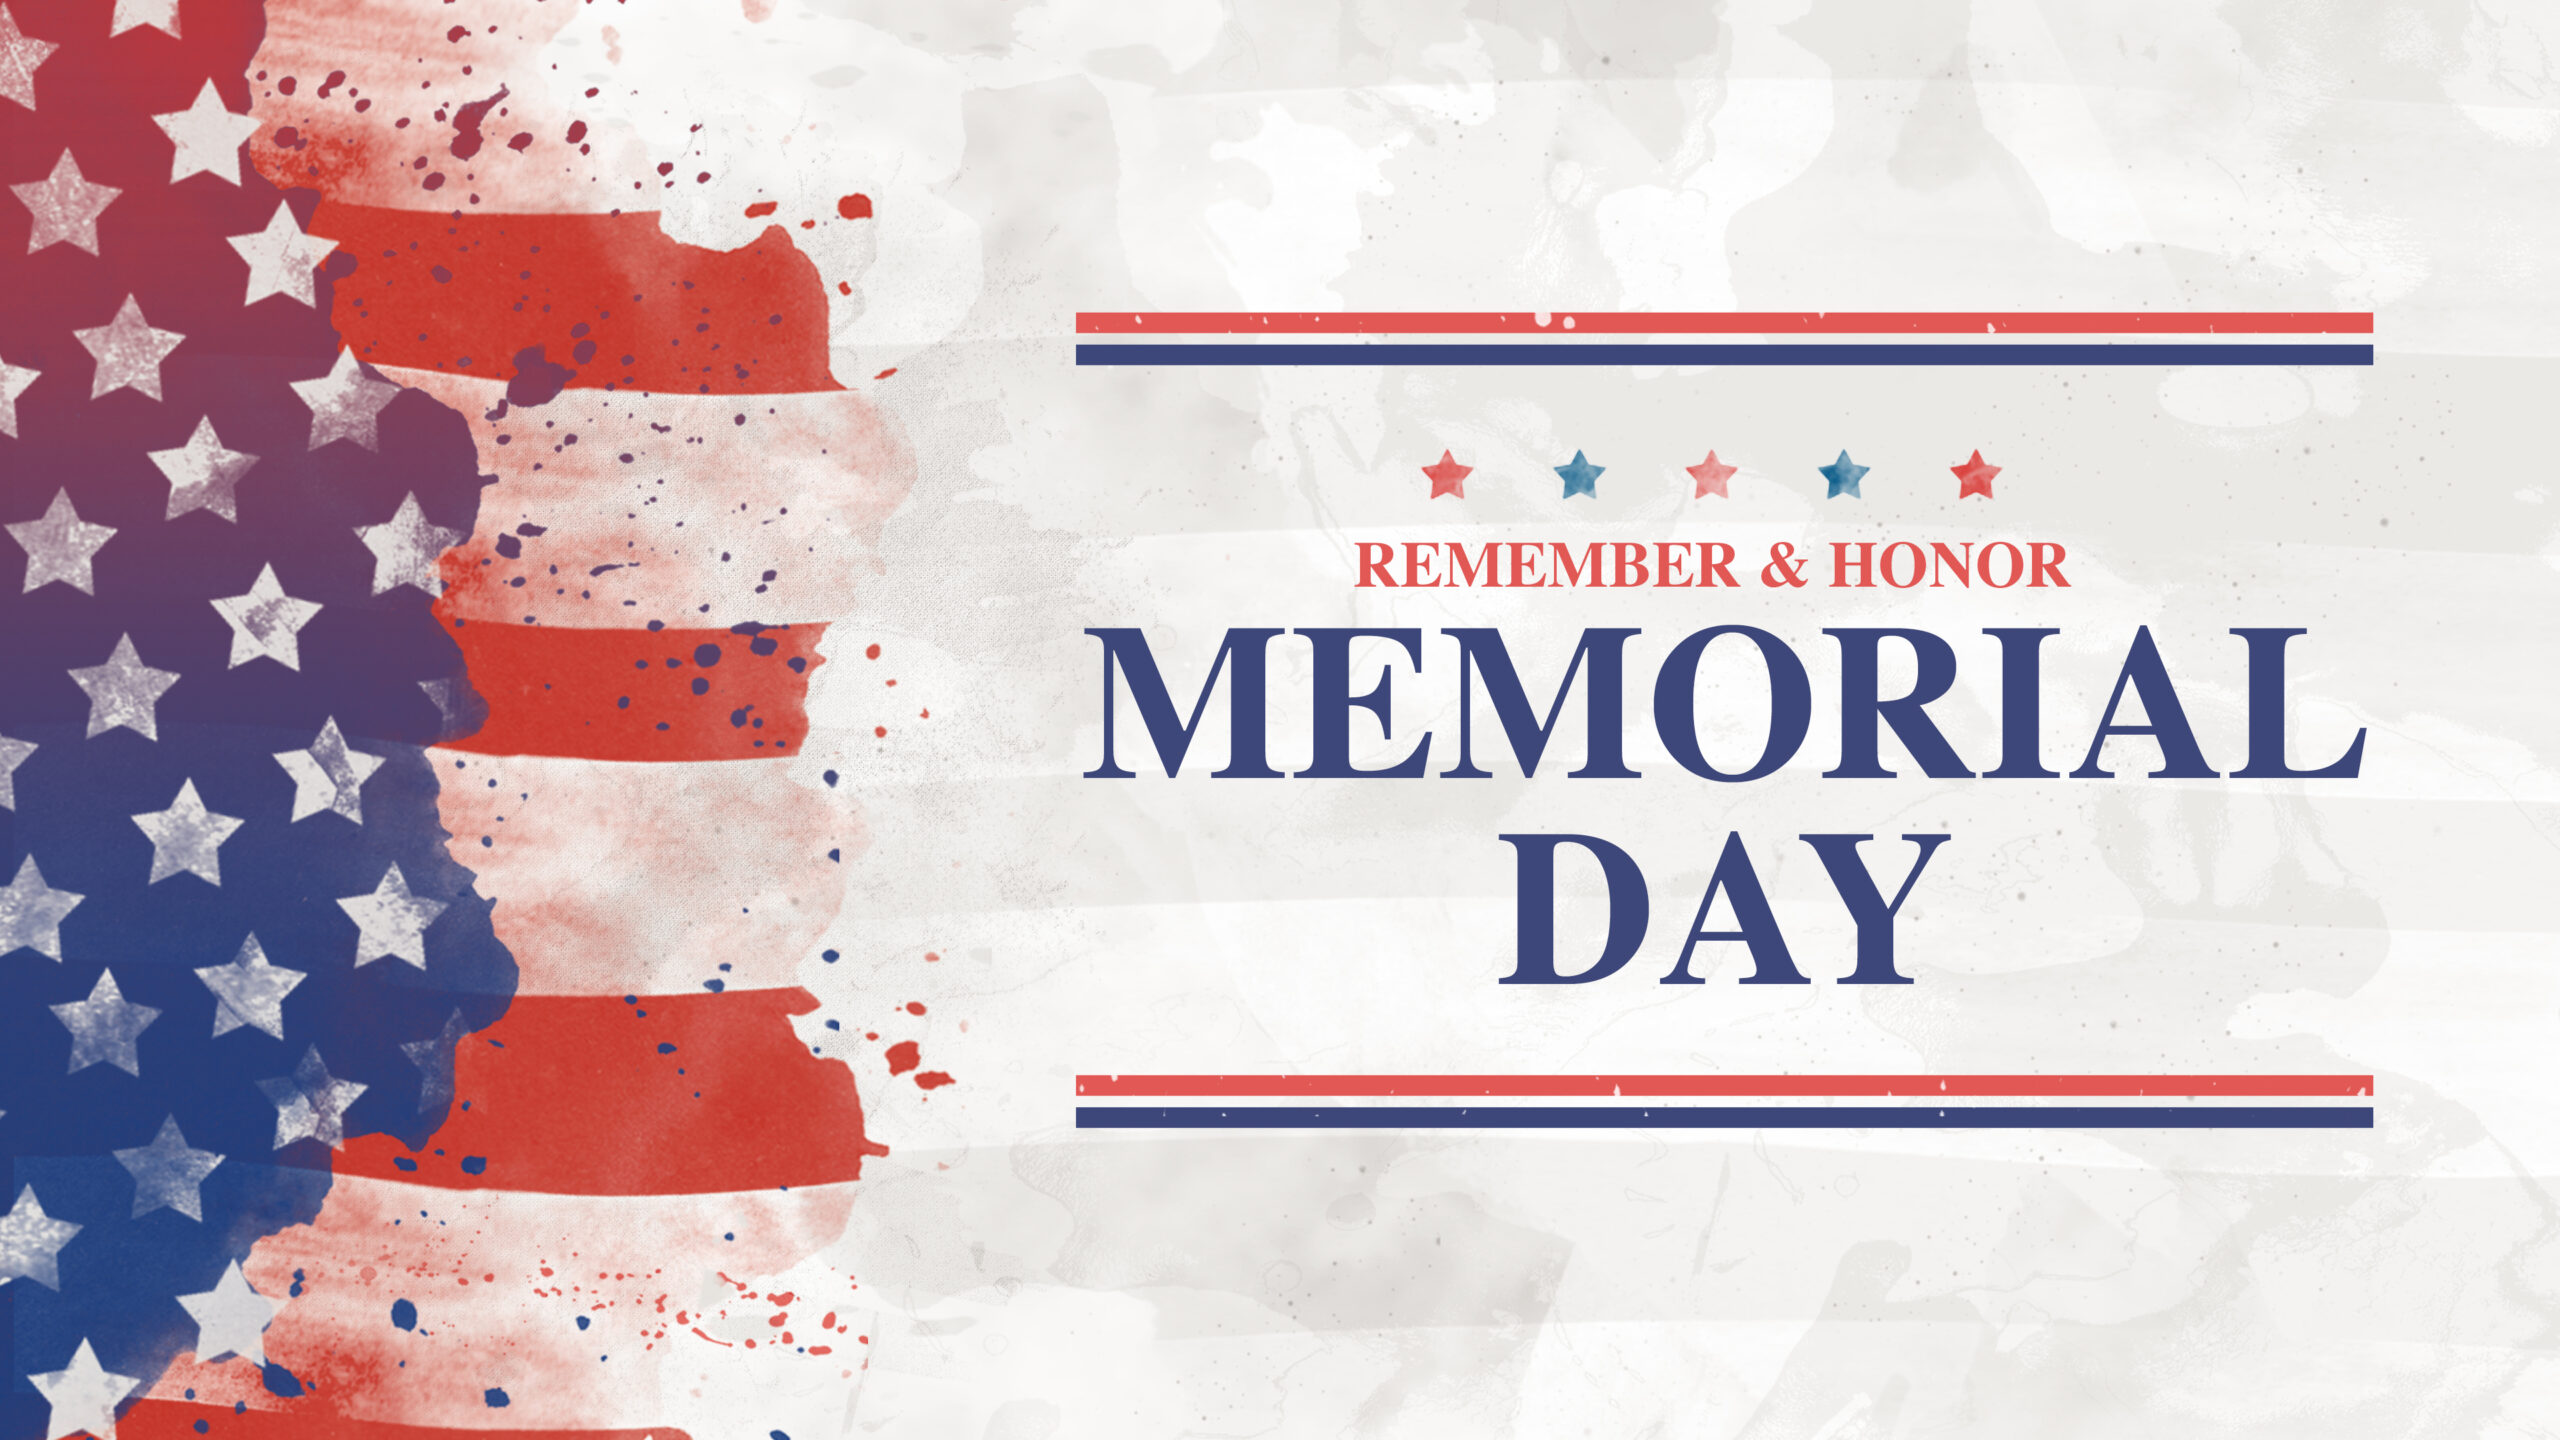 Memorial Day | Remember & Honor